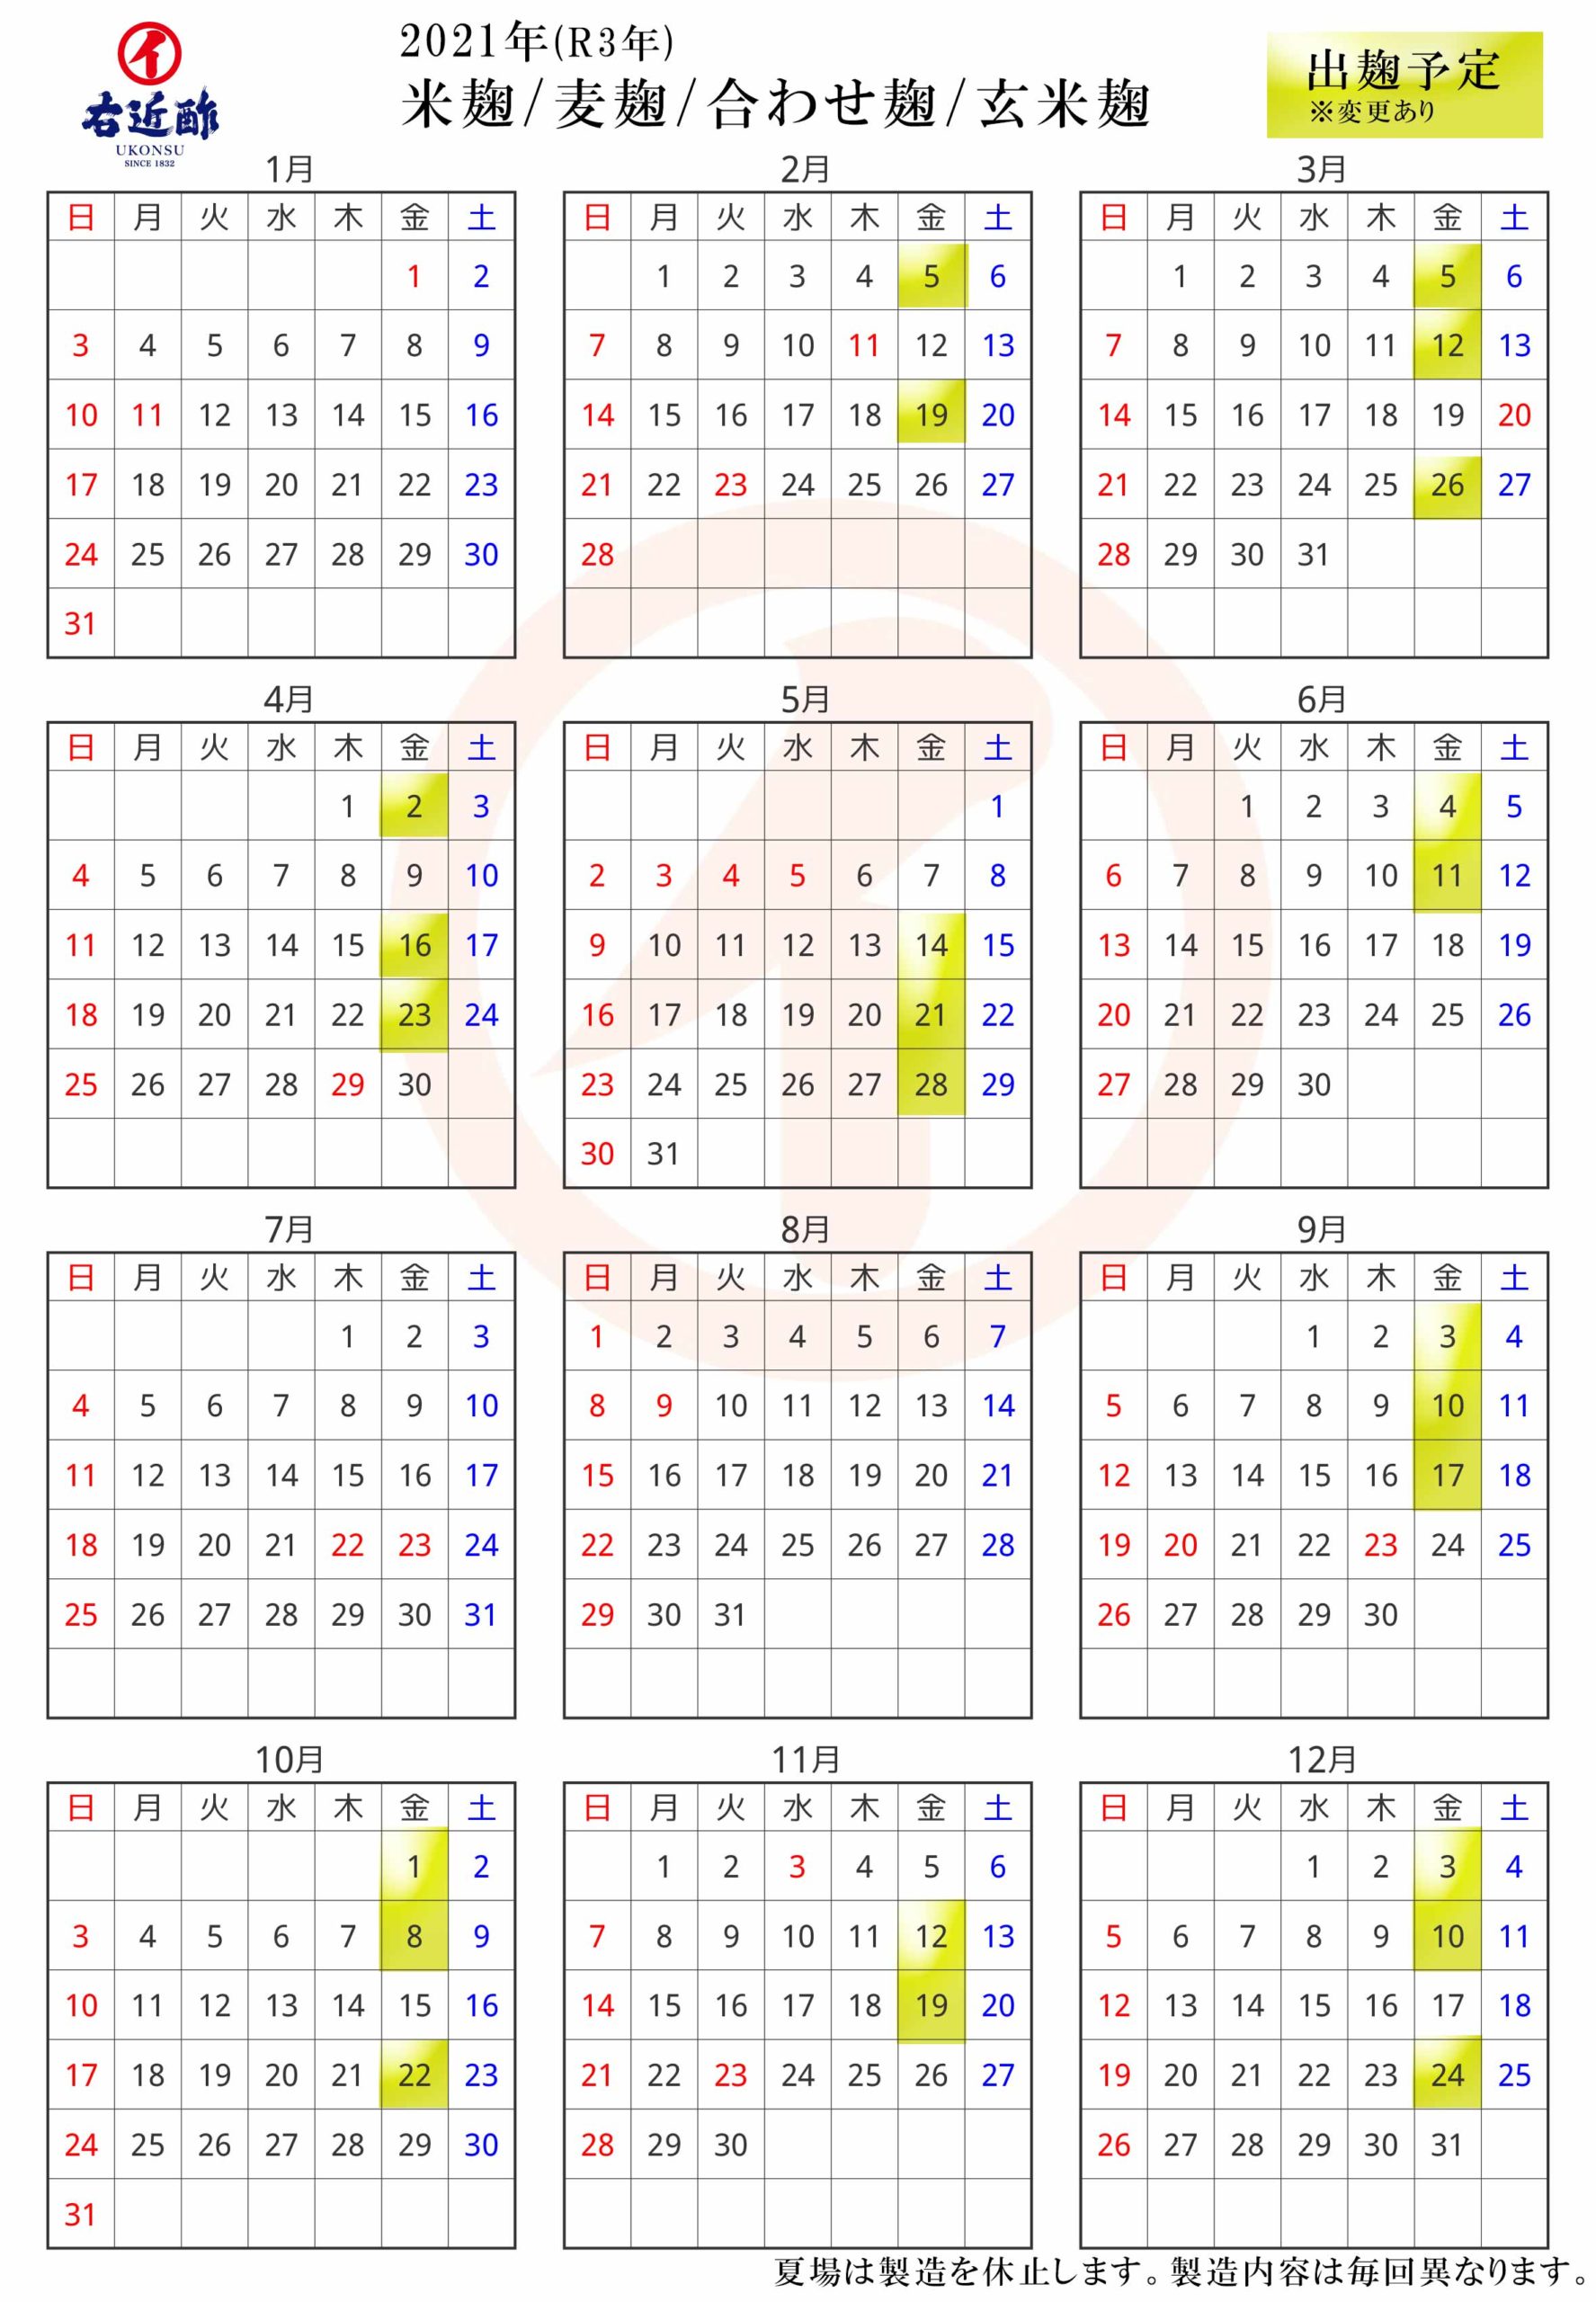 生麹2021年製造カレンダー